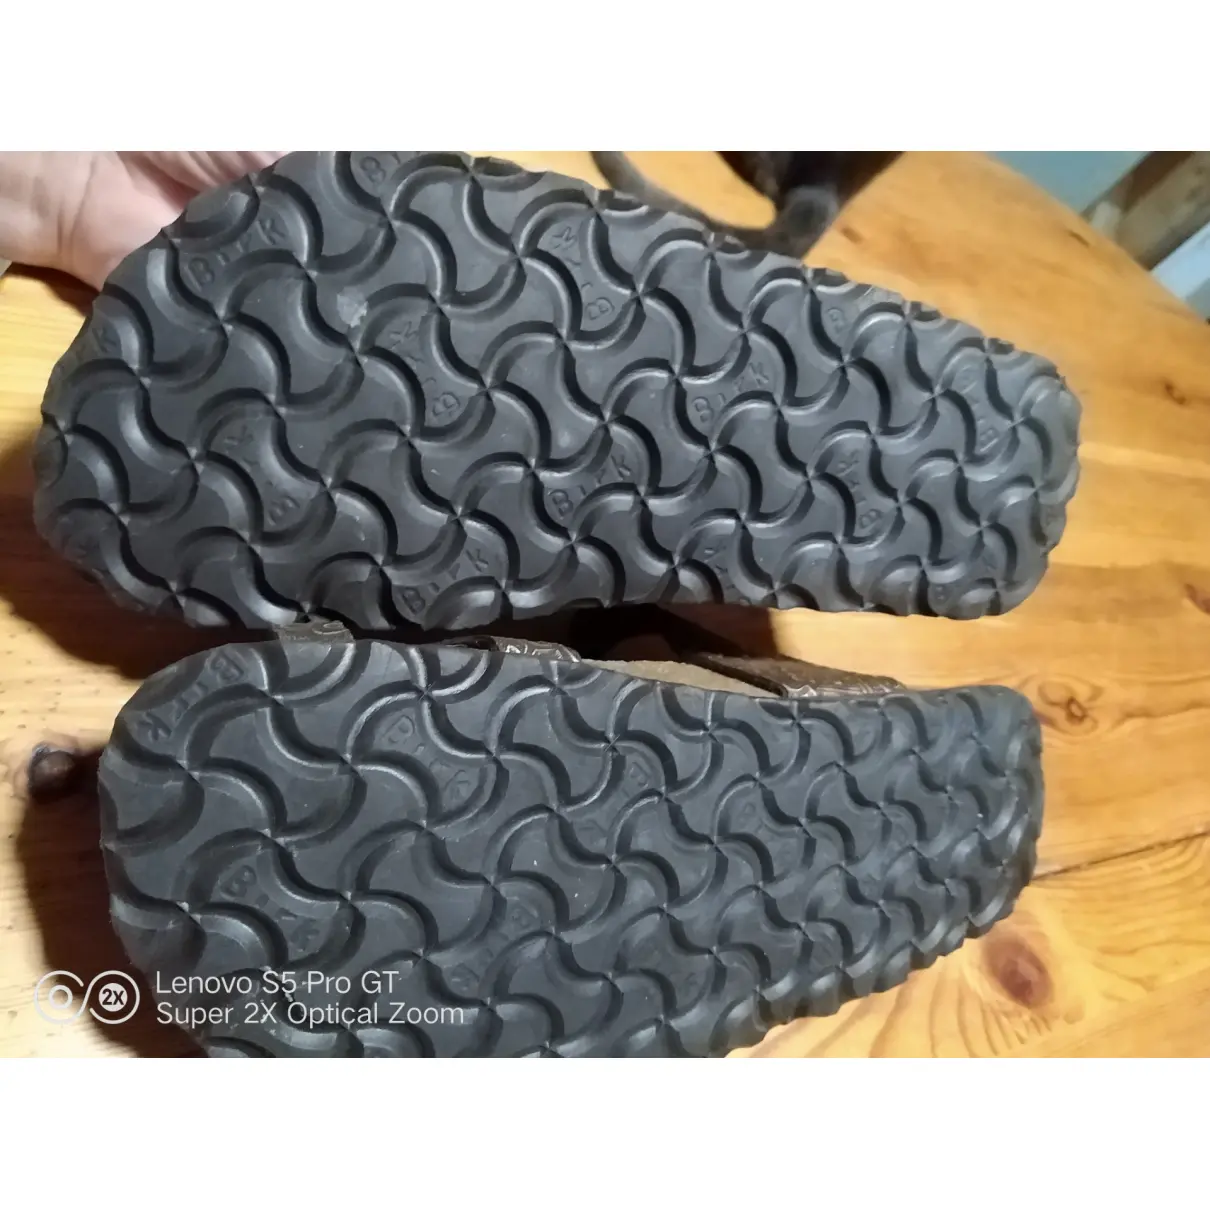 Vegan leather flip flops Birkenstock